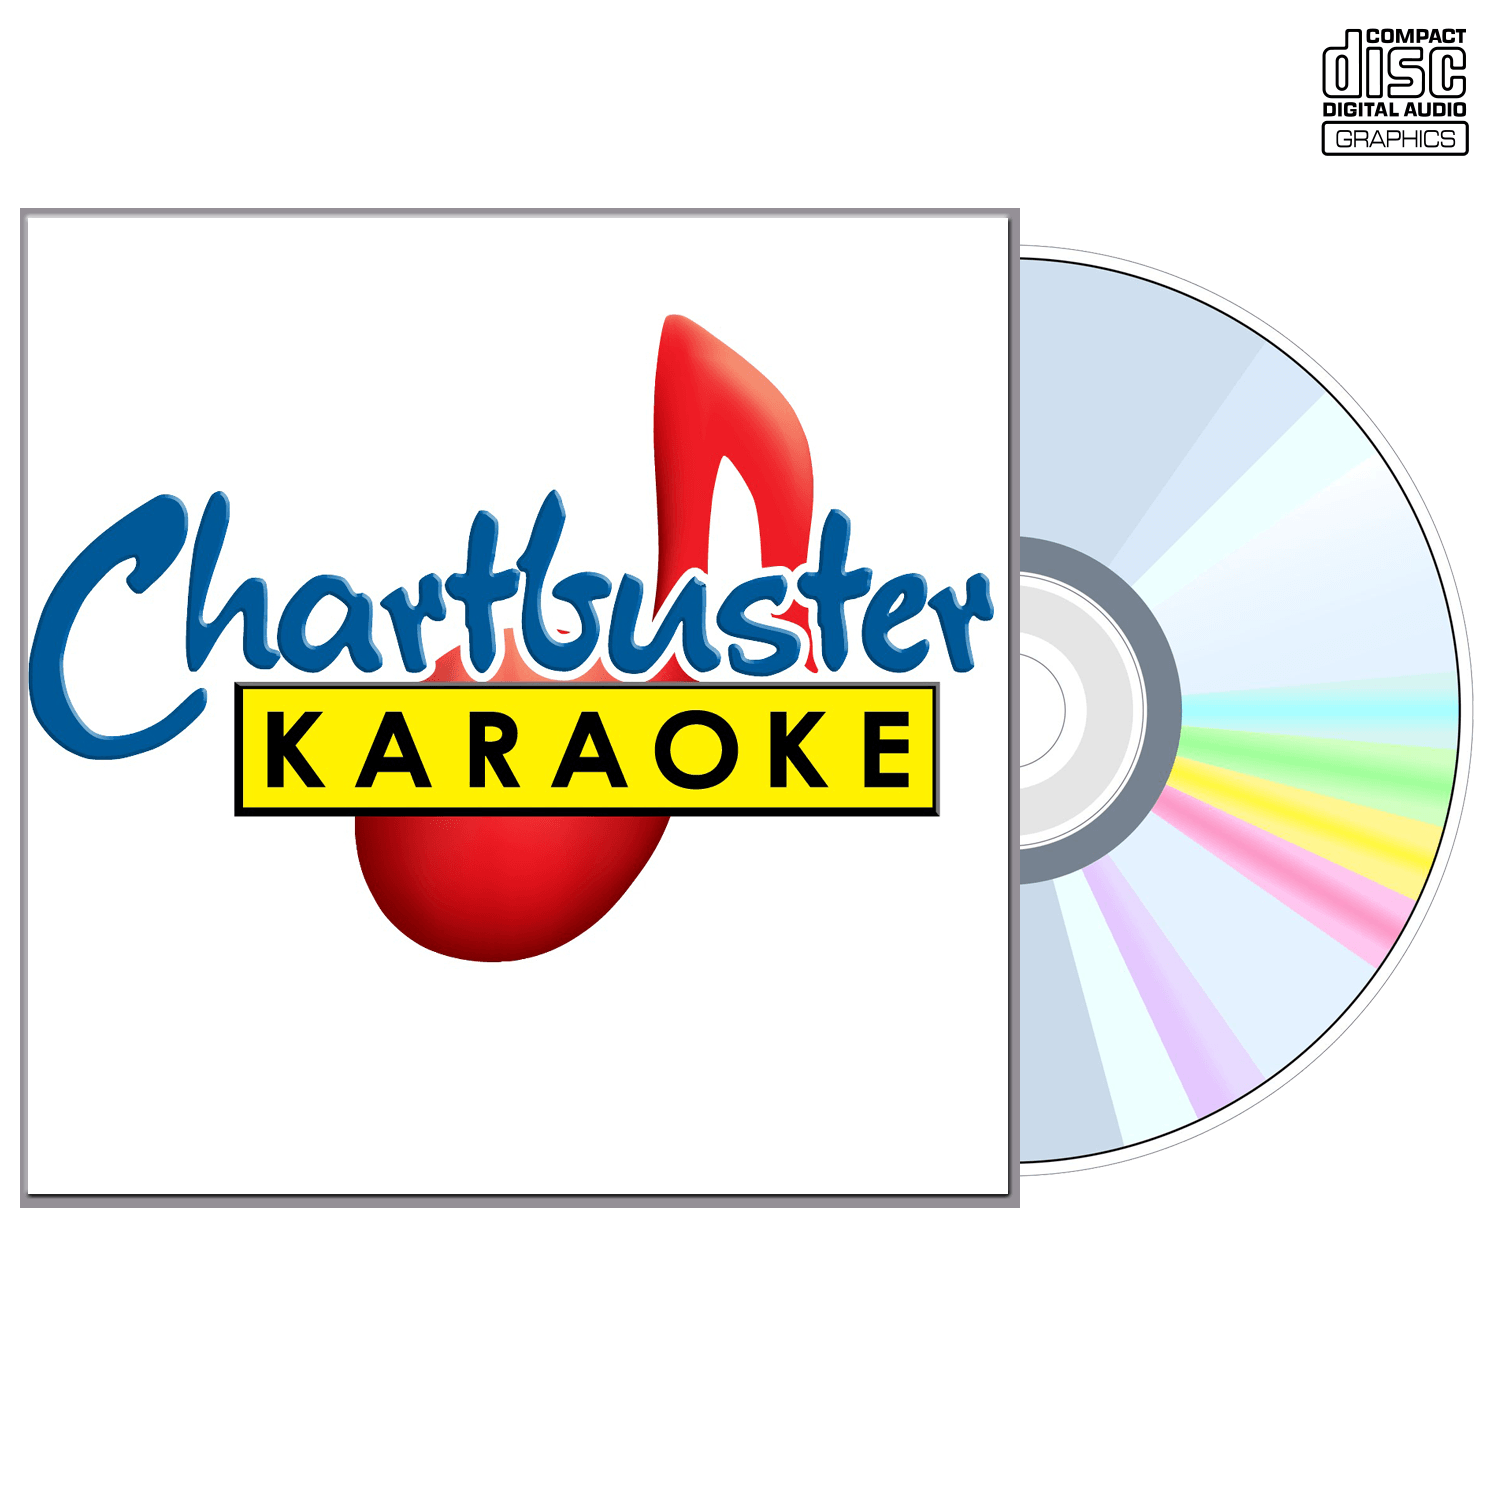 Mark Chestnutt Vol 2 - CD+G - Chartbuster Karaoke - Karaoke Home Entertainment